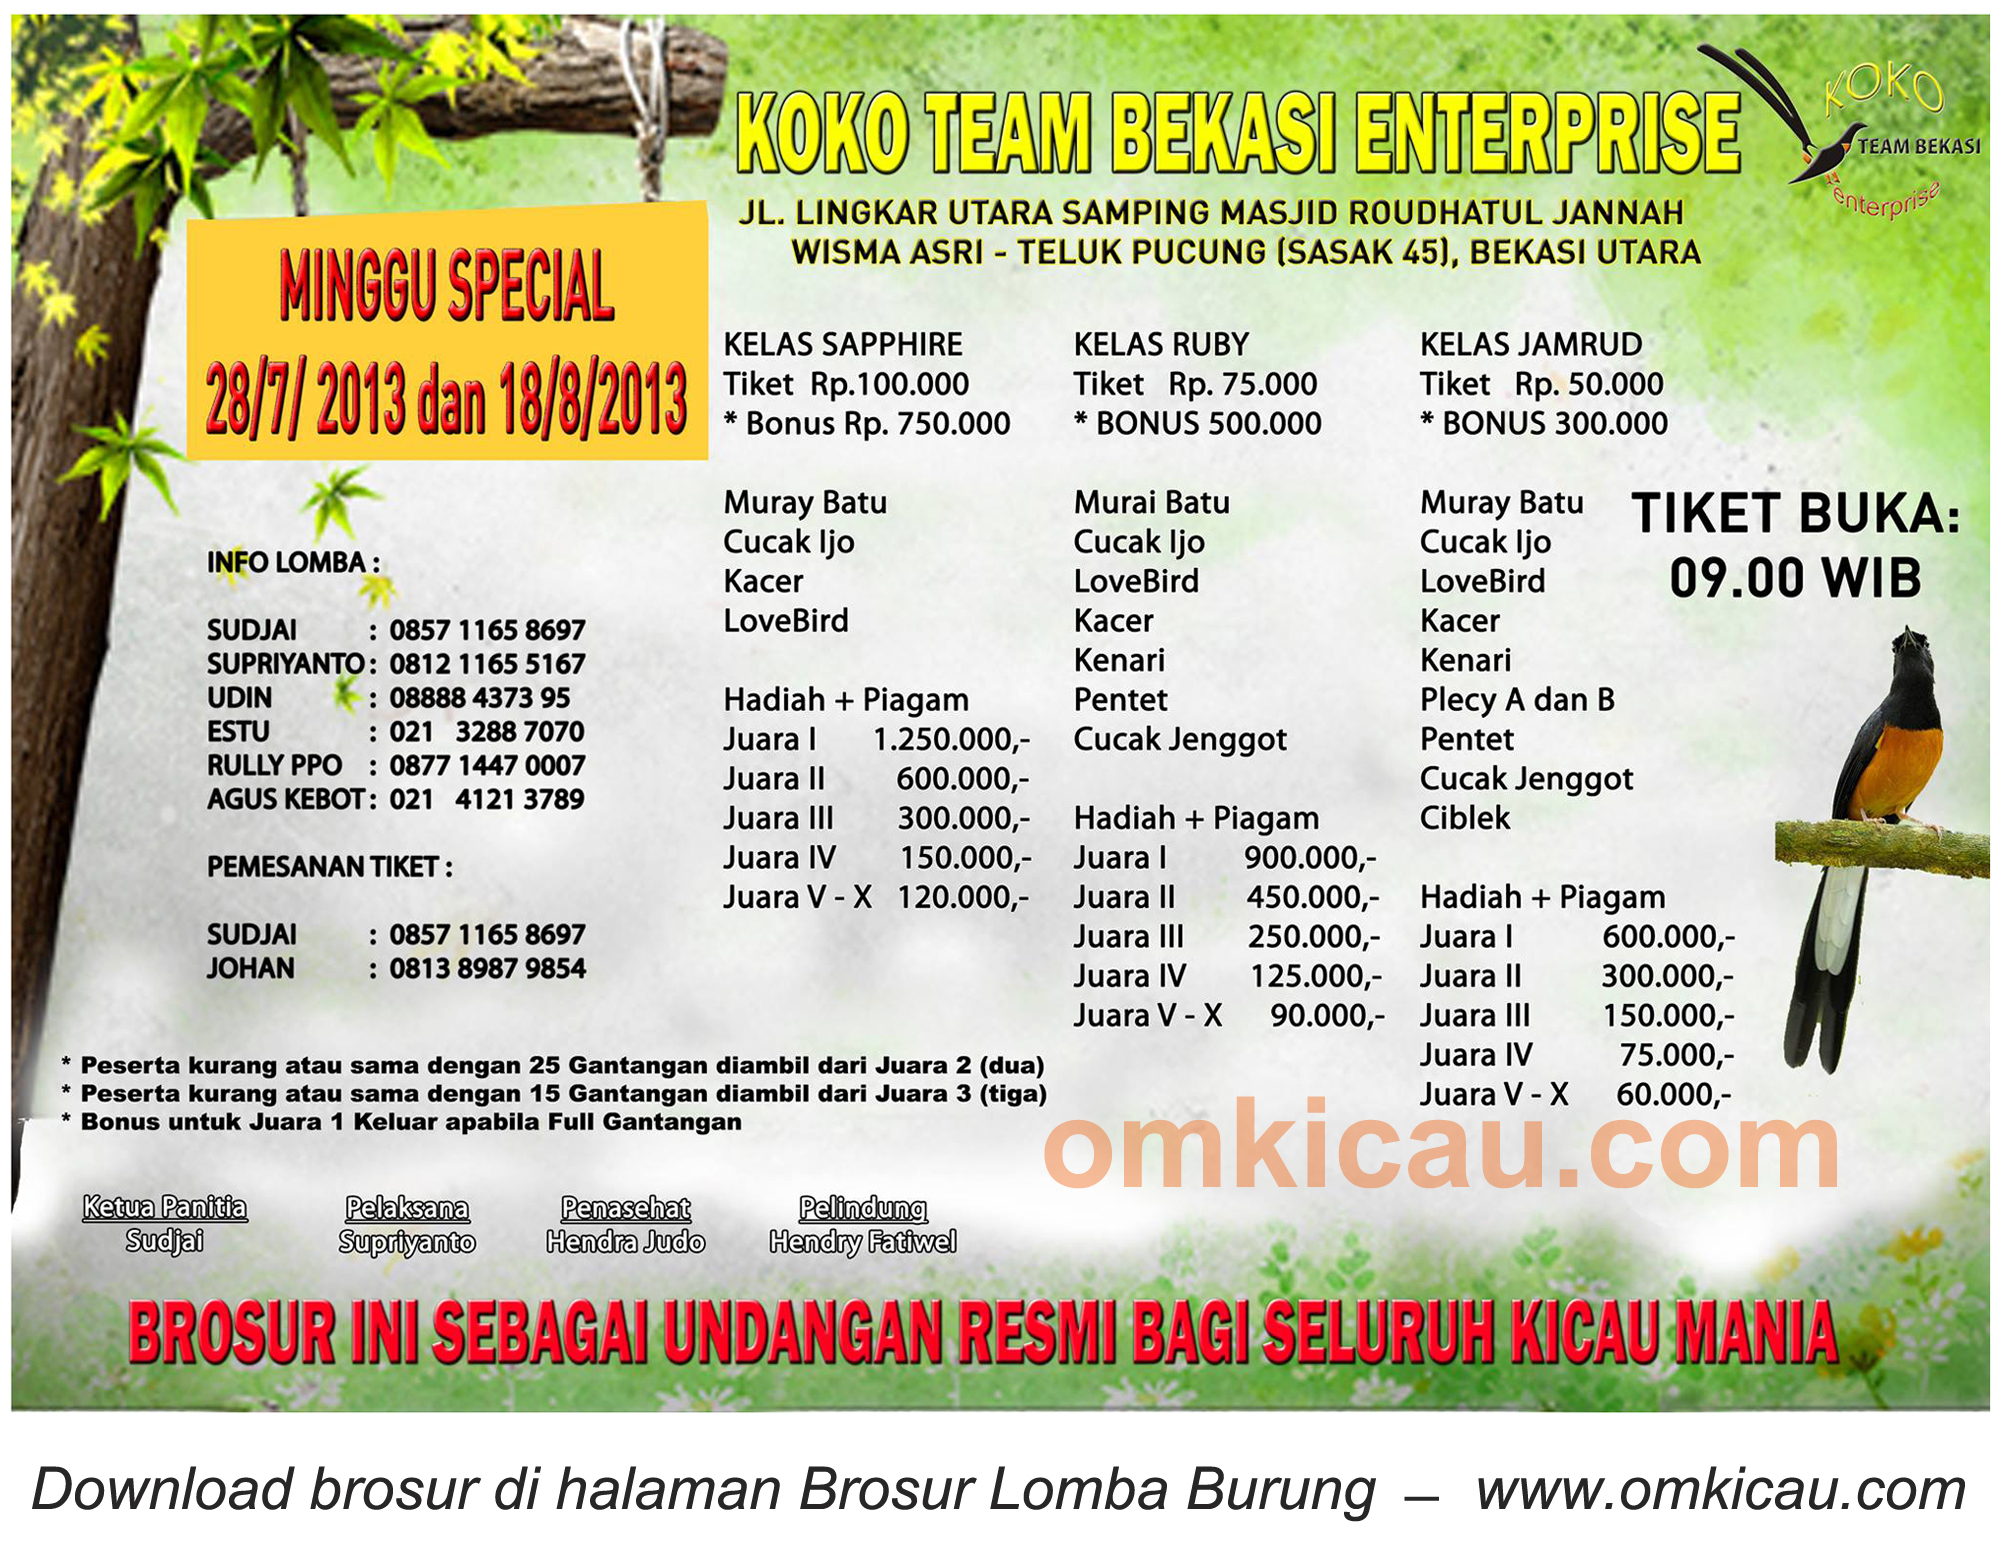 Brosur Lomba Burung Koko Team Bekasi Enterprise - 28 Juli 2013